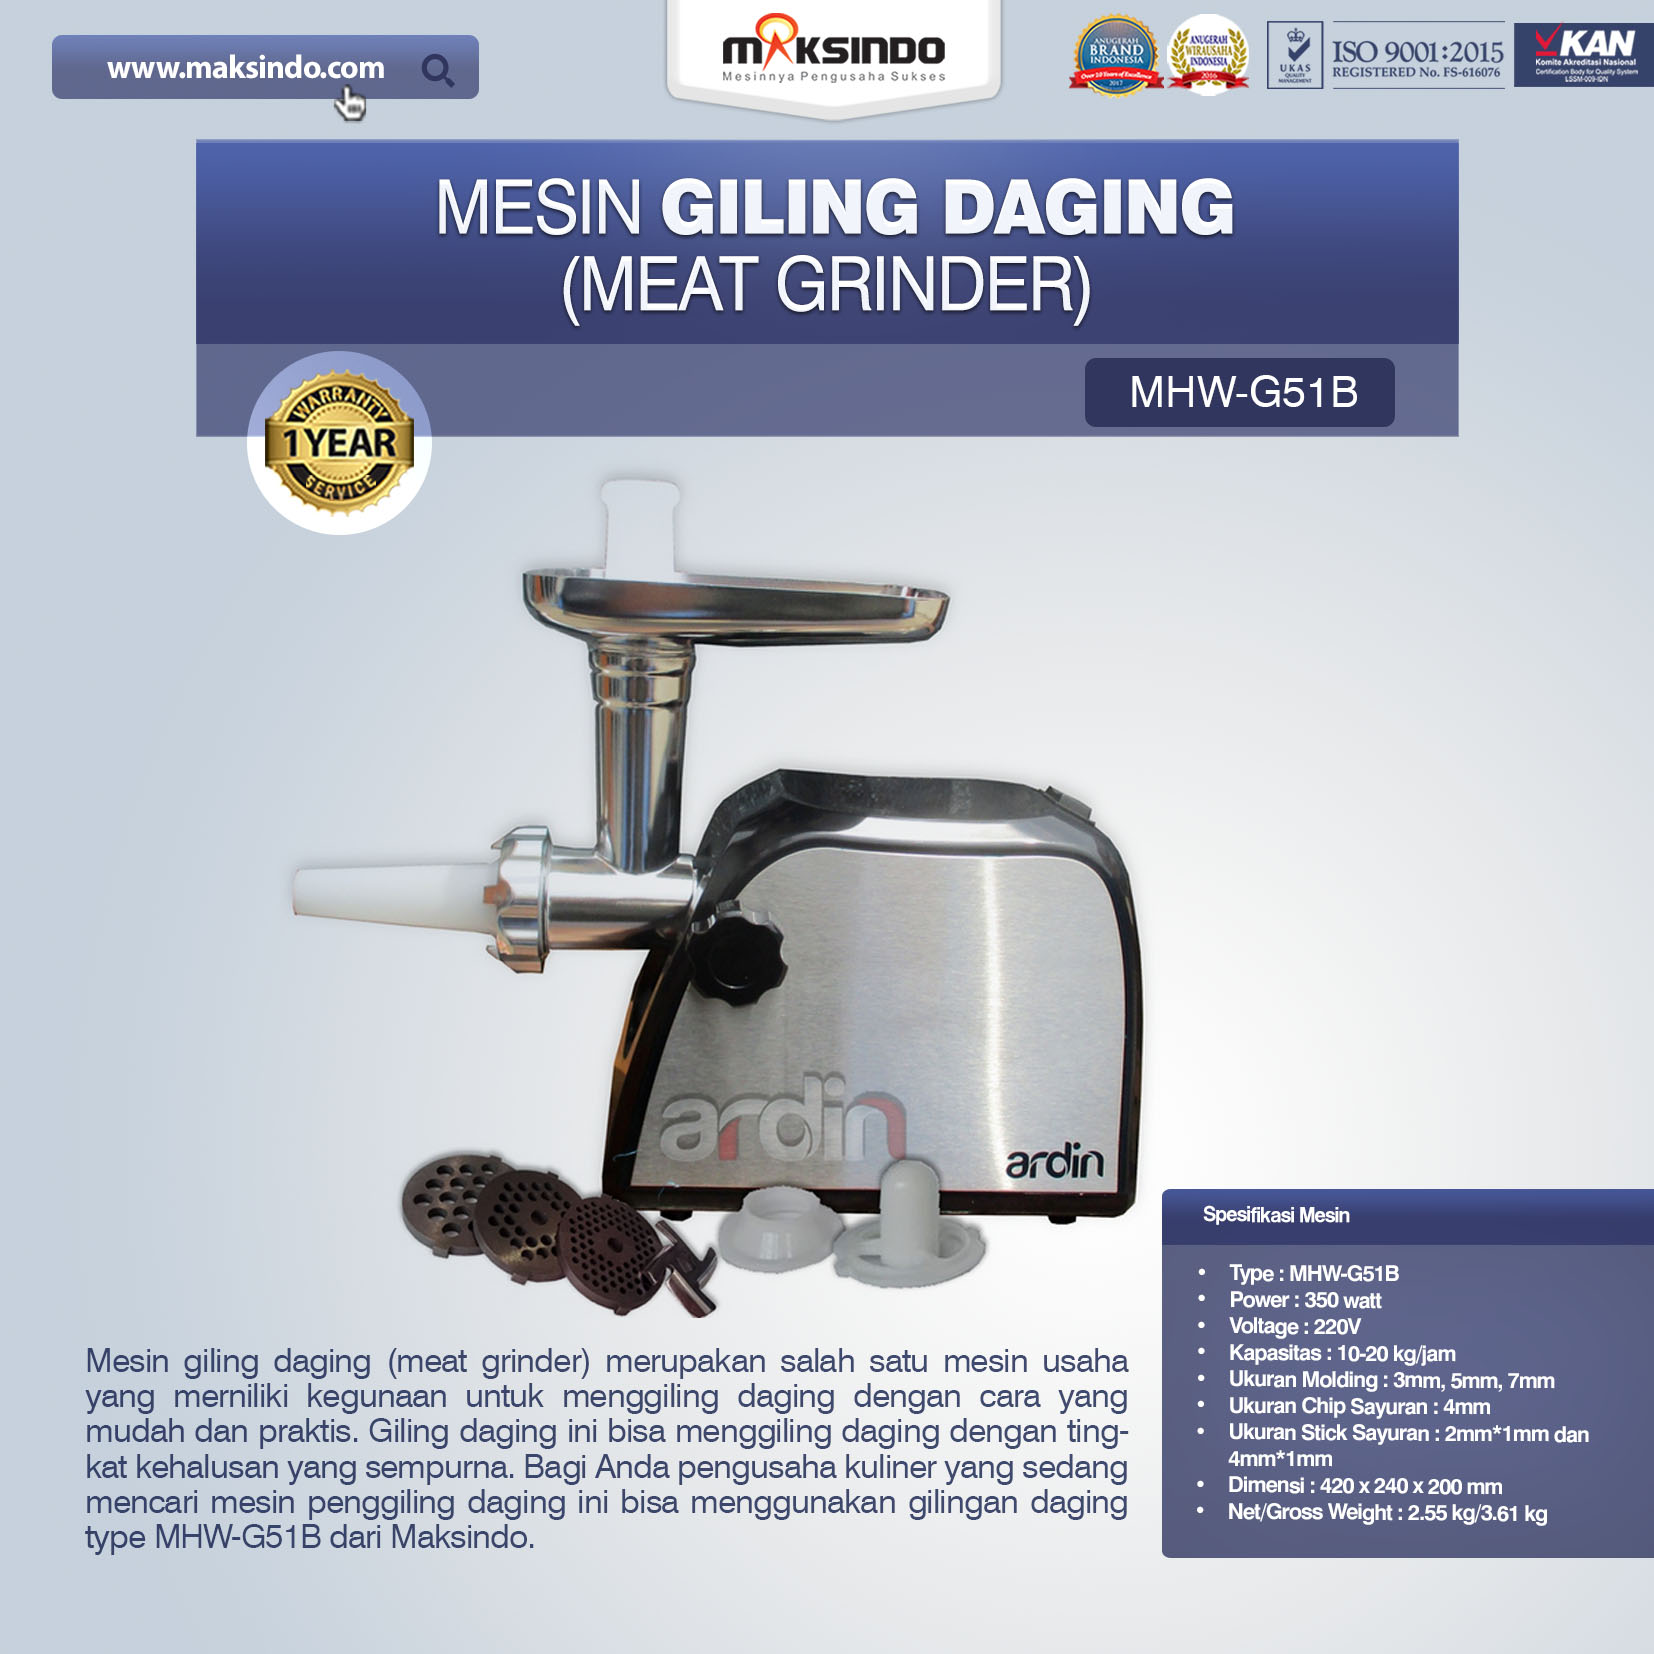 Jual Mesin Giling Daging (Meat Grinder) MHW-G51B di Solo